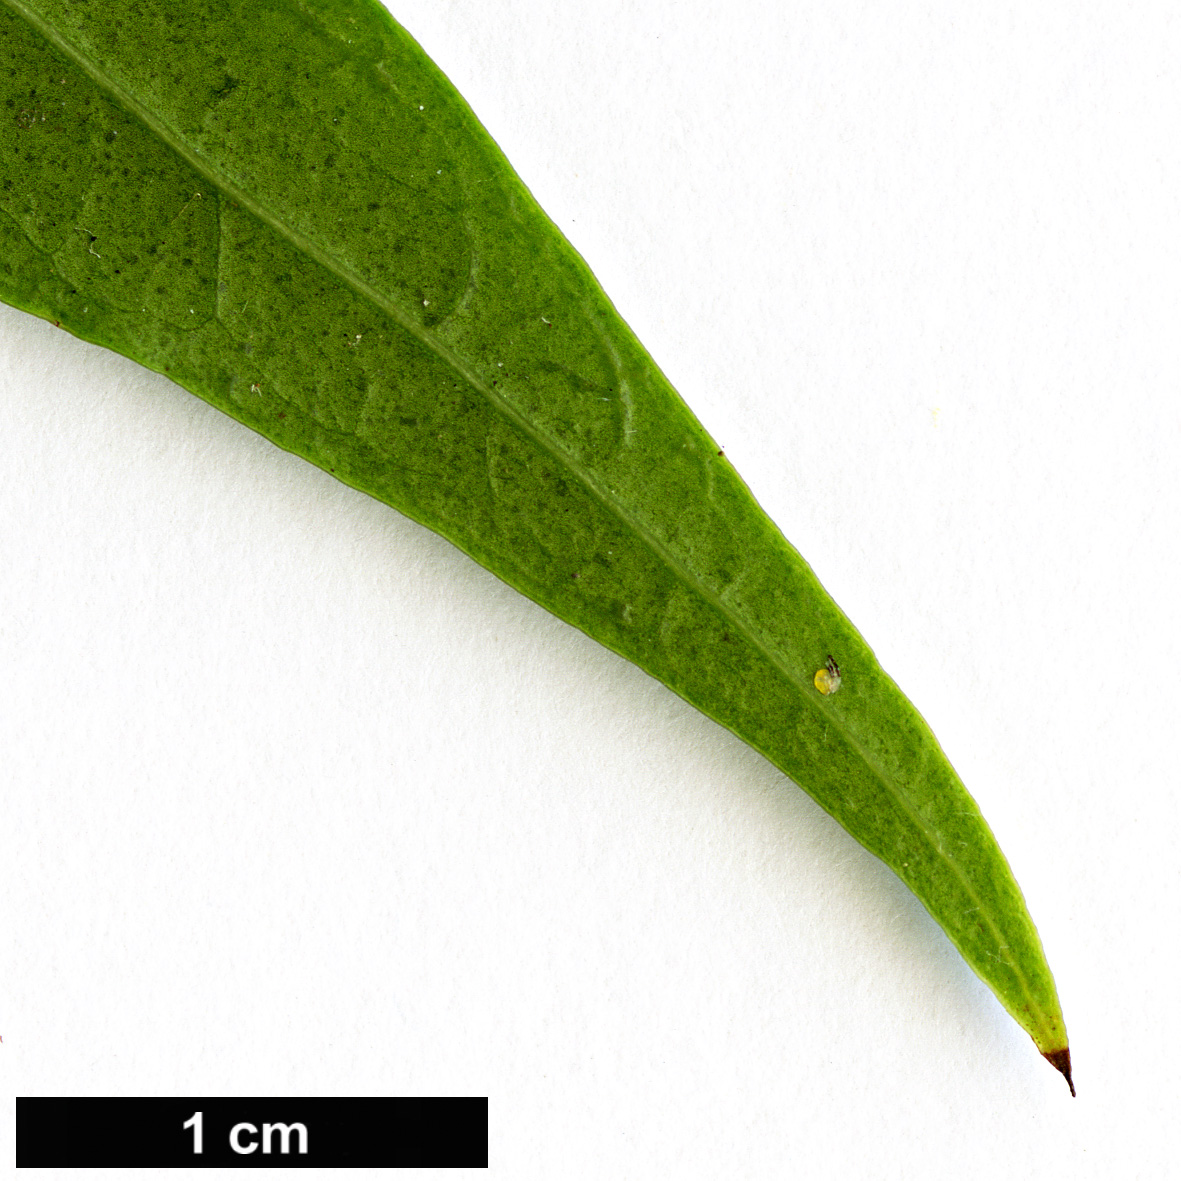 High resolution image: Family: Oleaceae - Genus: Osmanthus - Taxon: lanceolatus